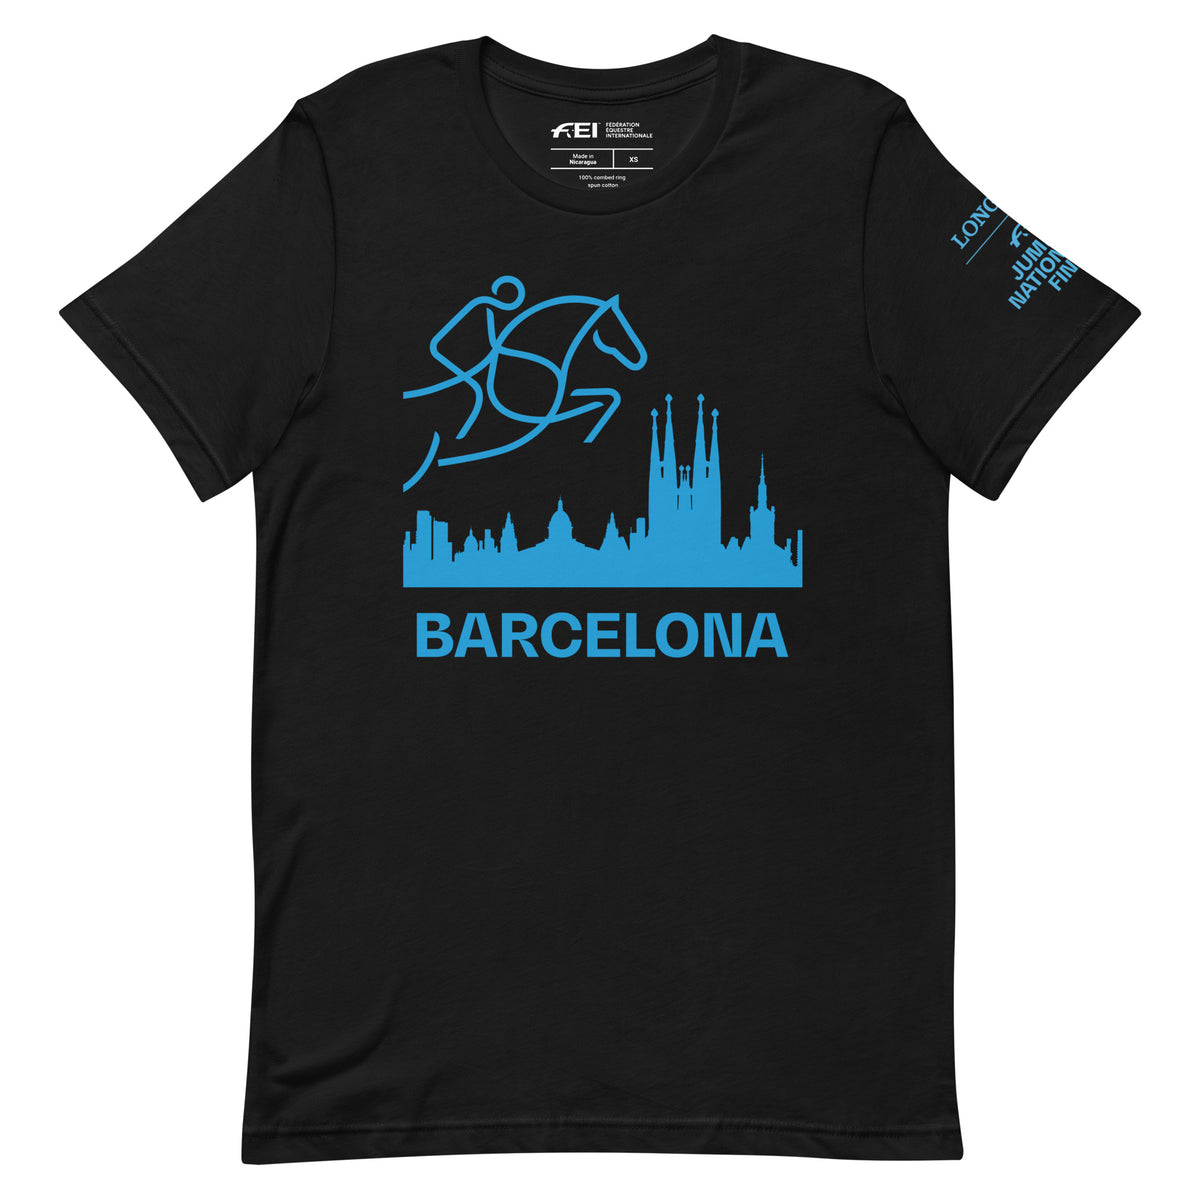 Barcelona Black Unisex T-Shirt